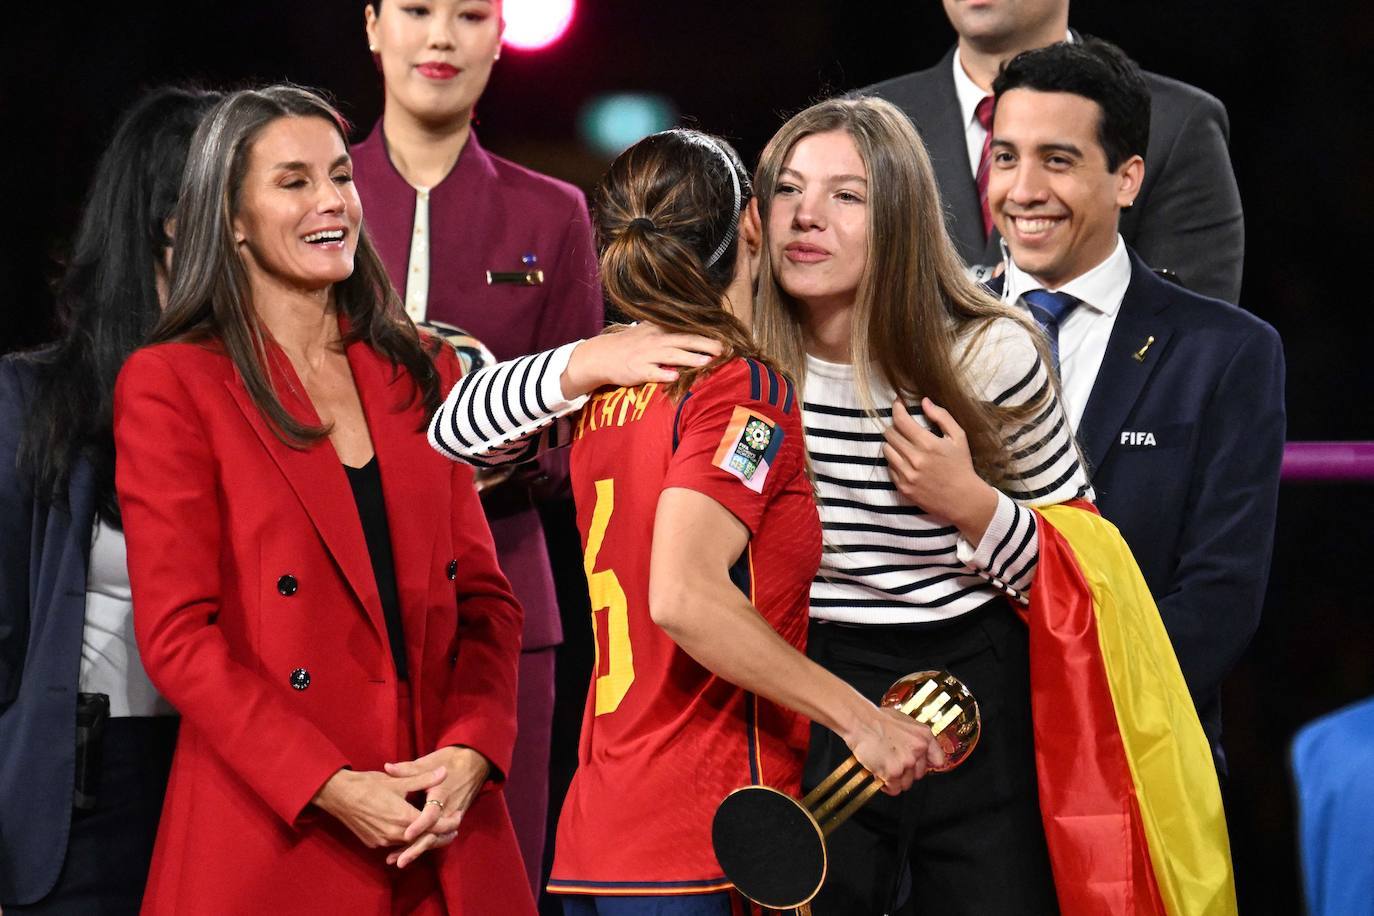 The Infanta Sofía congratulates Aitana Bonmatí at the end of the match, in the presence of Spain's Queen Letizia.